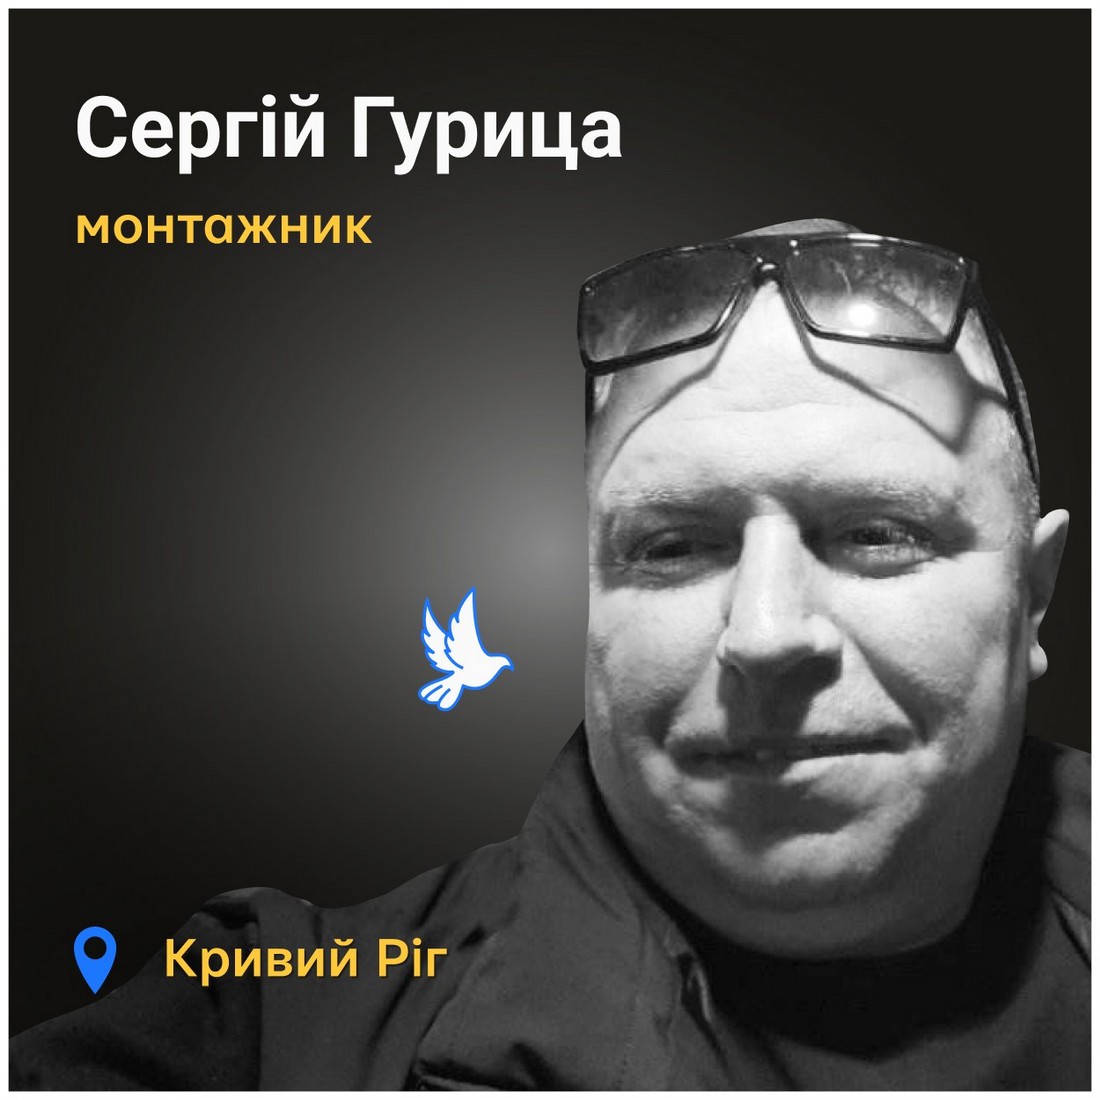 Меморіал: вбиті росією. Сергій Гурица, 38 років, Кривий Ріг, червень